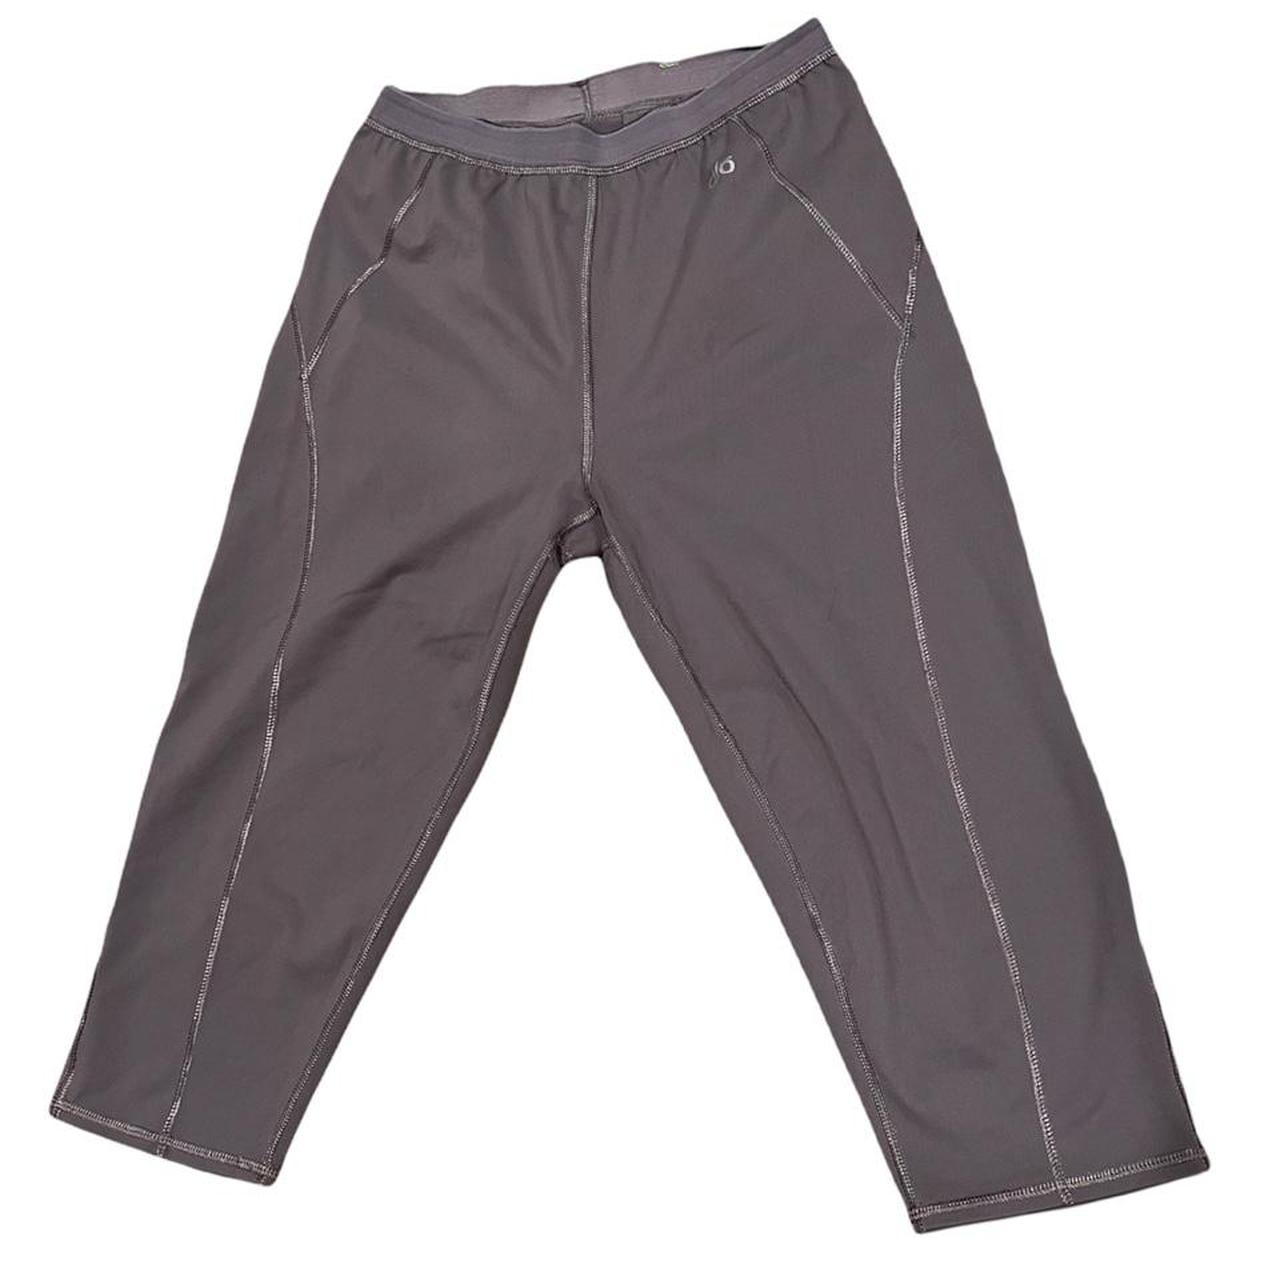 Product Image 1 - Alo leggings 

- Size Medium